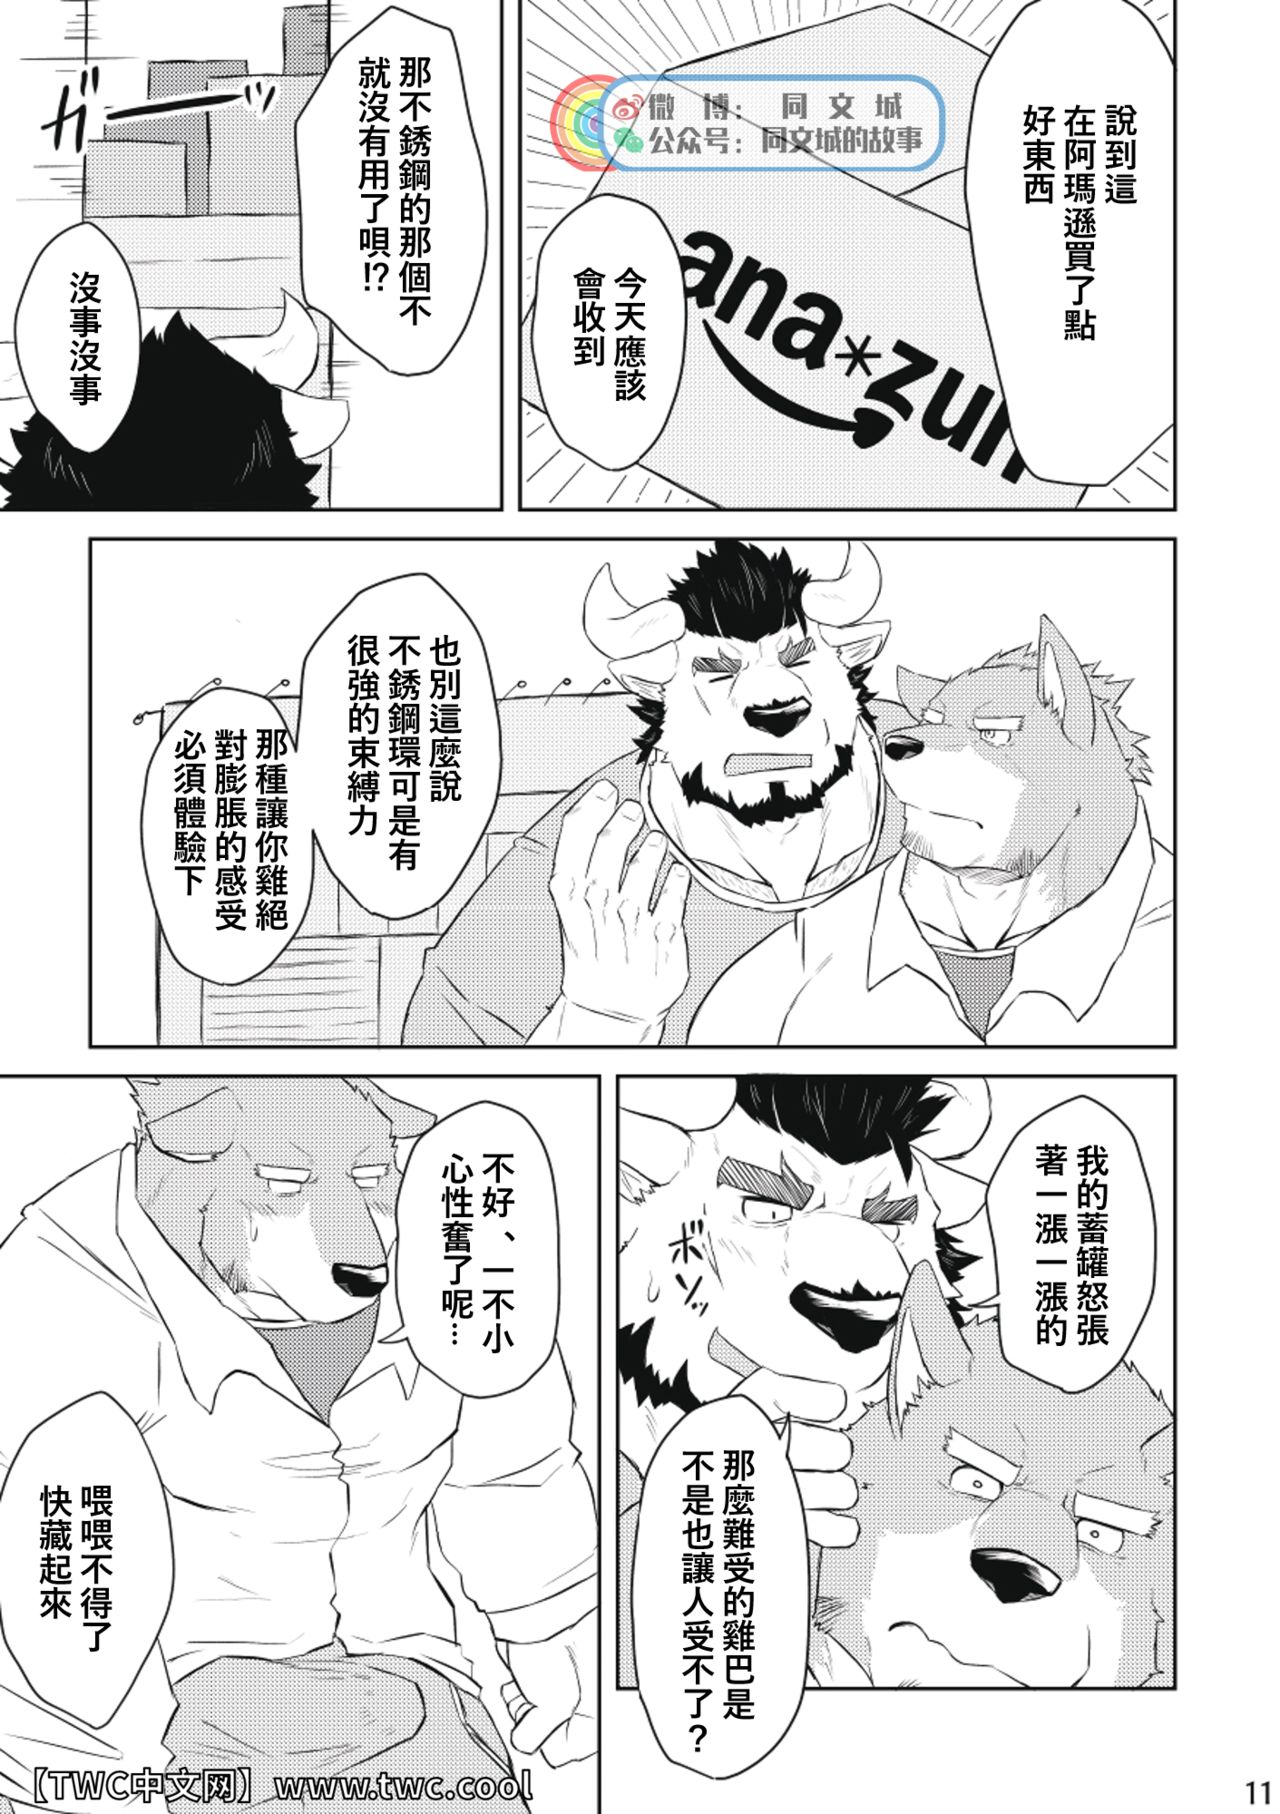 [Origin (Tamura Kazumasa)] How to Cock Ring [Chinese] [同文城] [オリジン (たむら・かずまさ)] How to コックリング [中国翻訳]